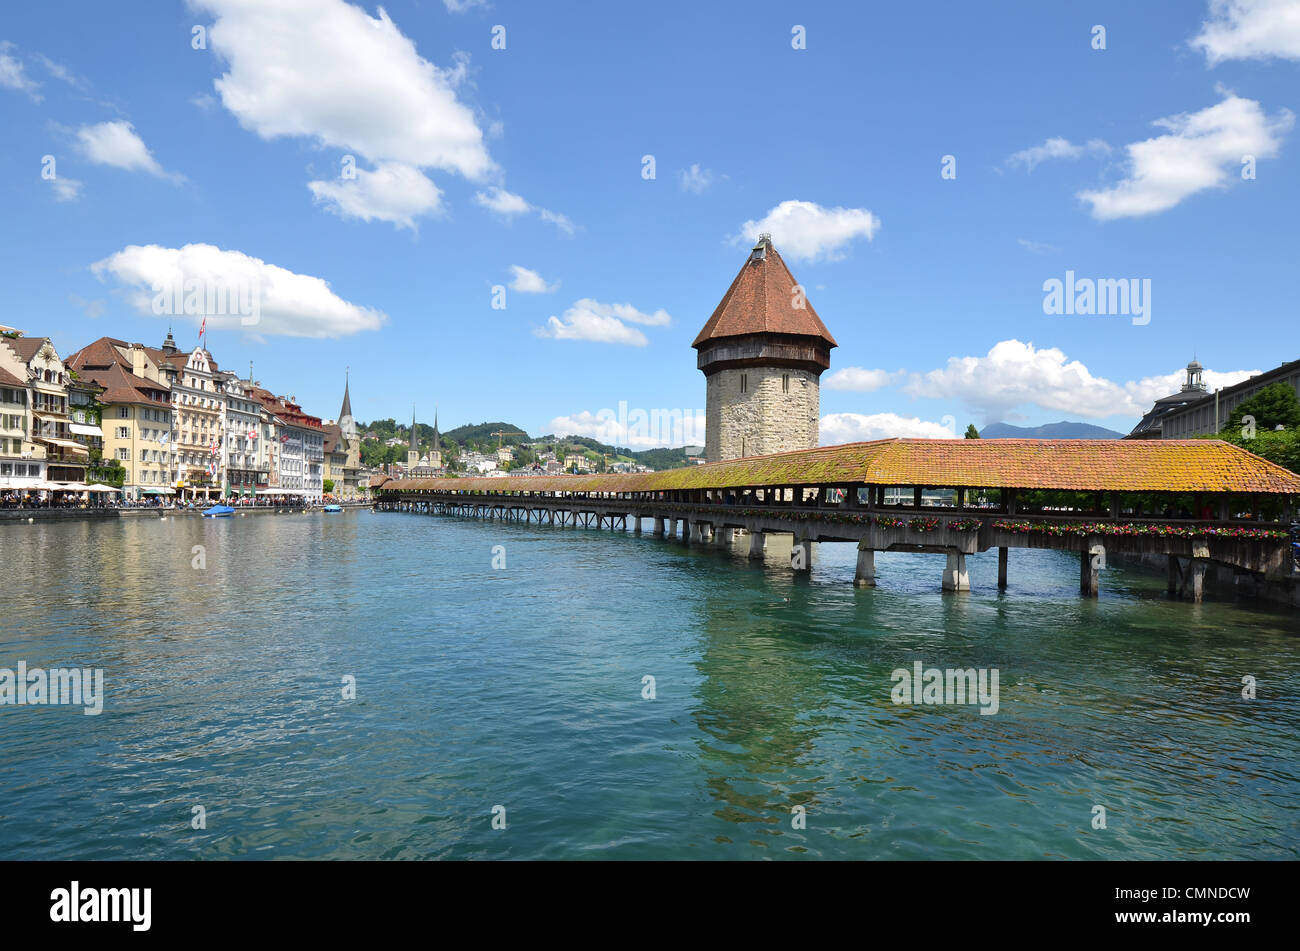 Der Fluss Reuss Uferpromenade der Stadt Luzern mit der berühmten Kapellbrucke-Brücke, erbaut im Jahre 1333. Stockfoto